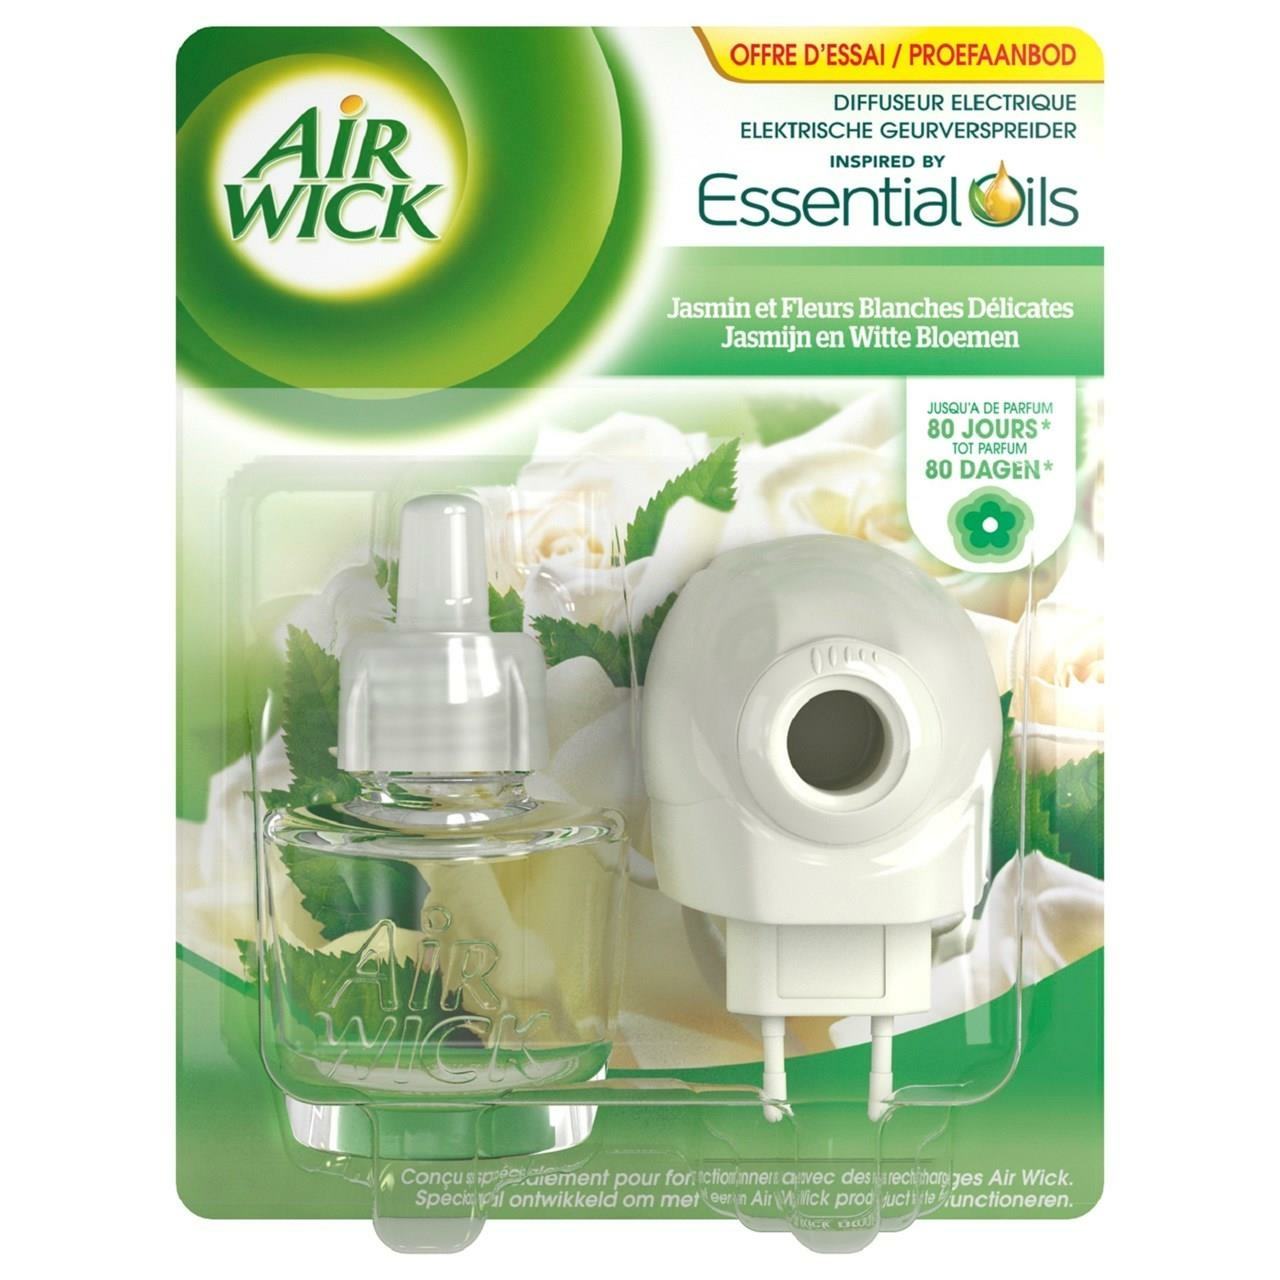 Airwick one-plug diffuseur electrique jasmin et fleurs blanches